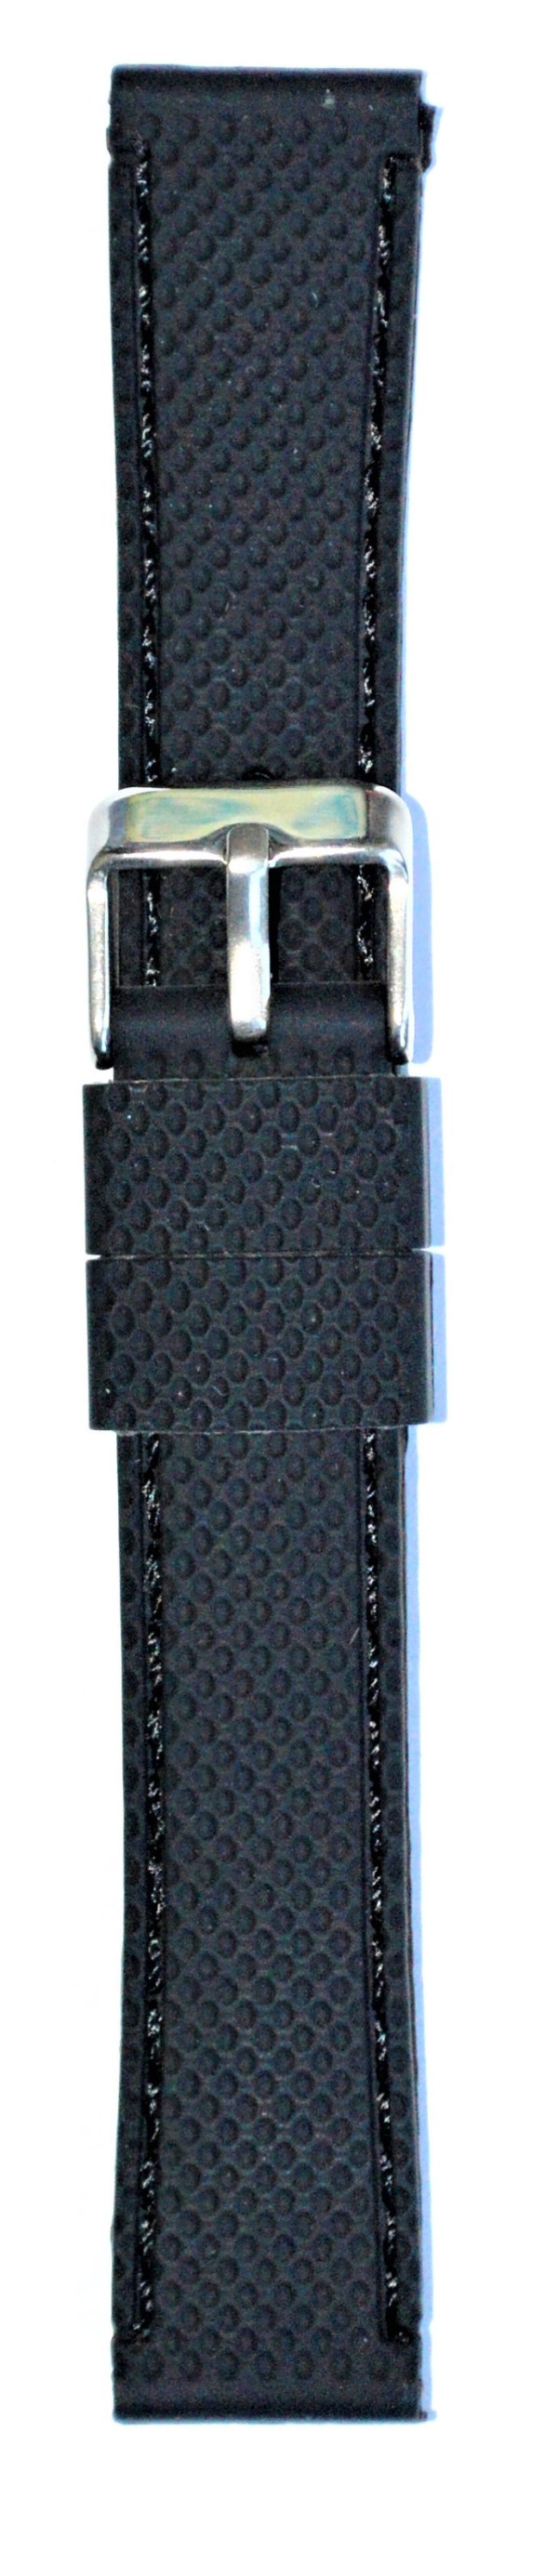 Silikonski kaiš - SK 22.10 Crna boja 22mm